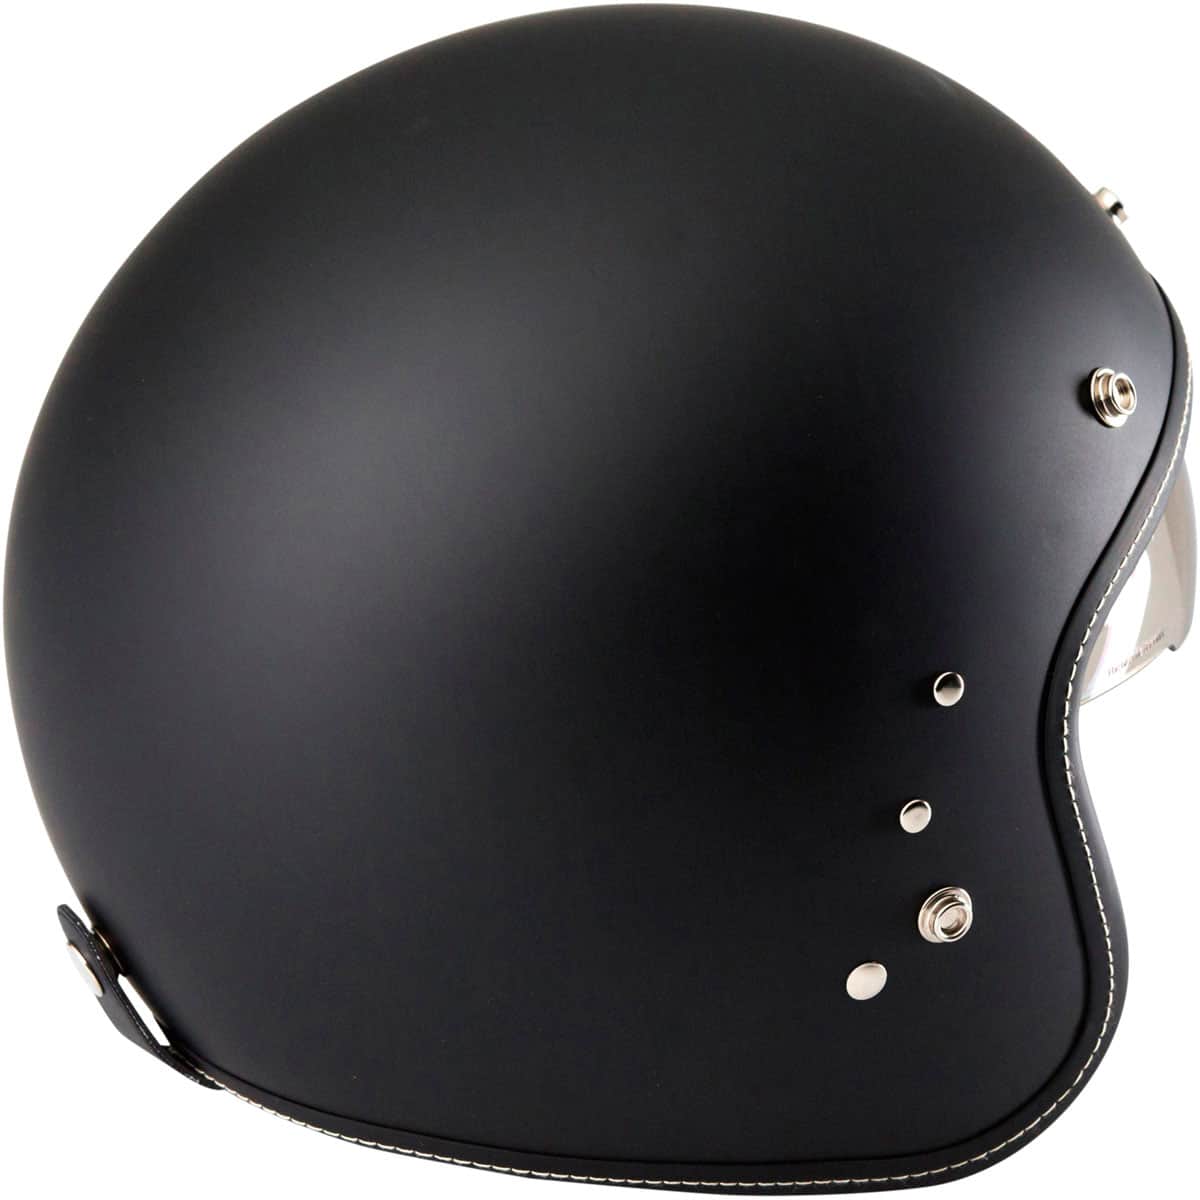 Duchinni D501 Open Face Motorbike Helmet - Matt Black 4